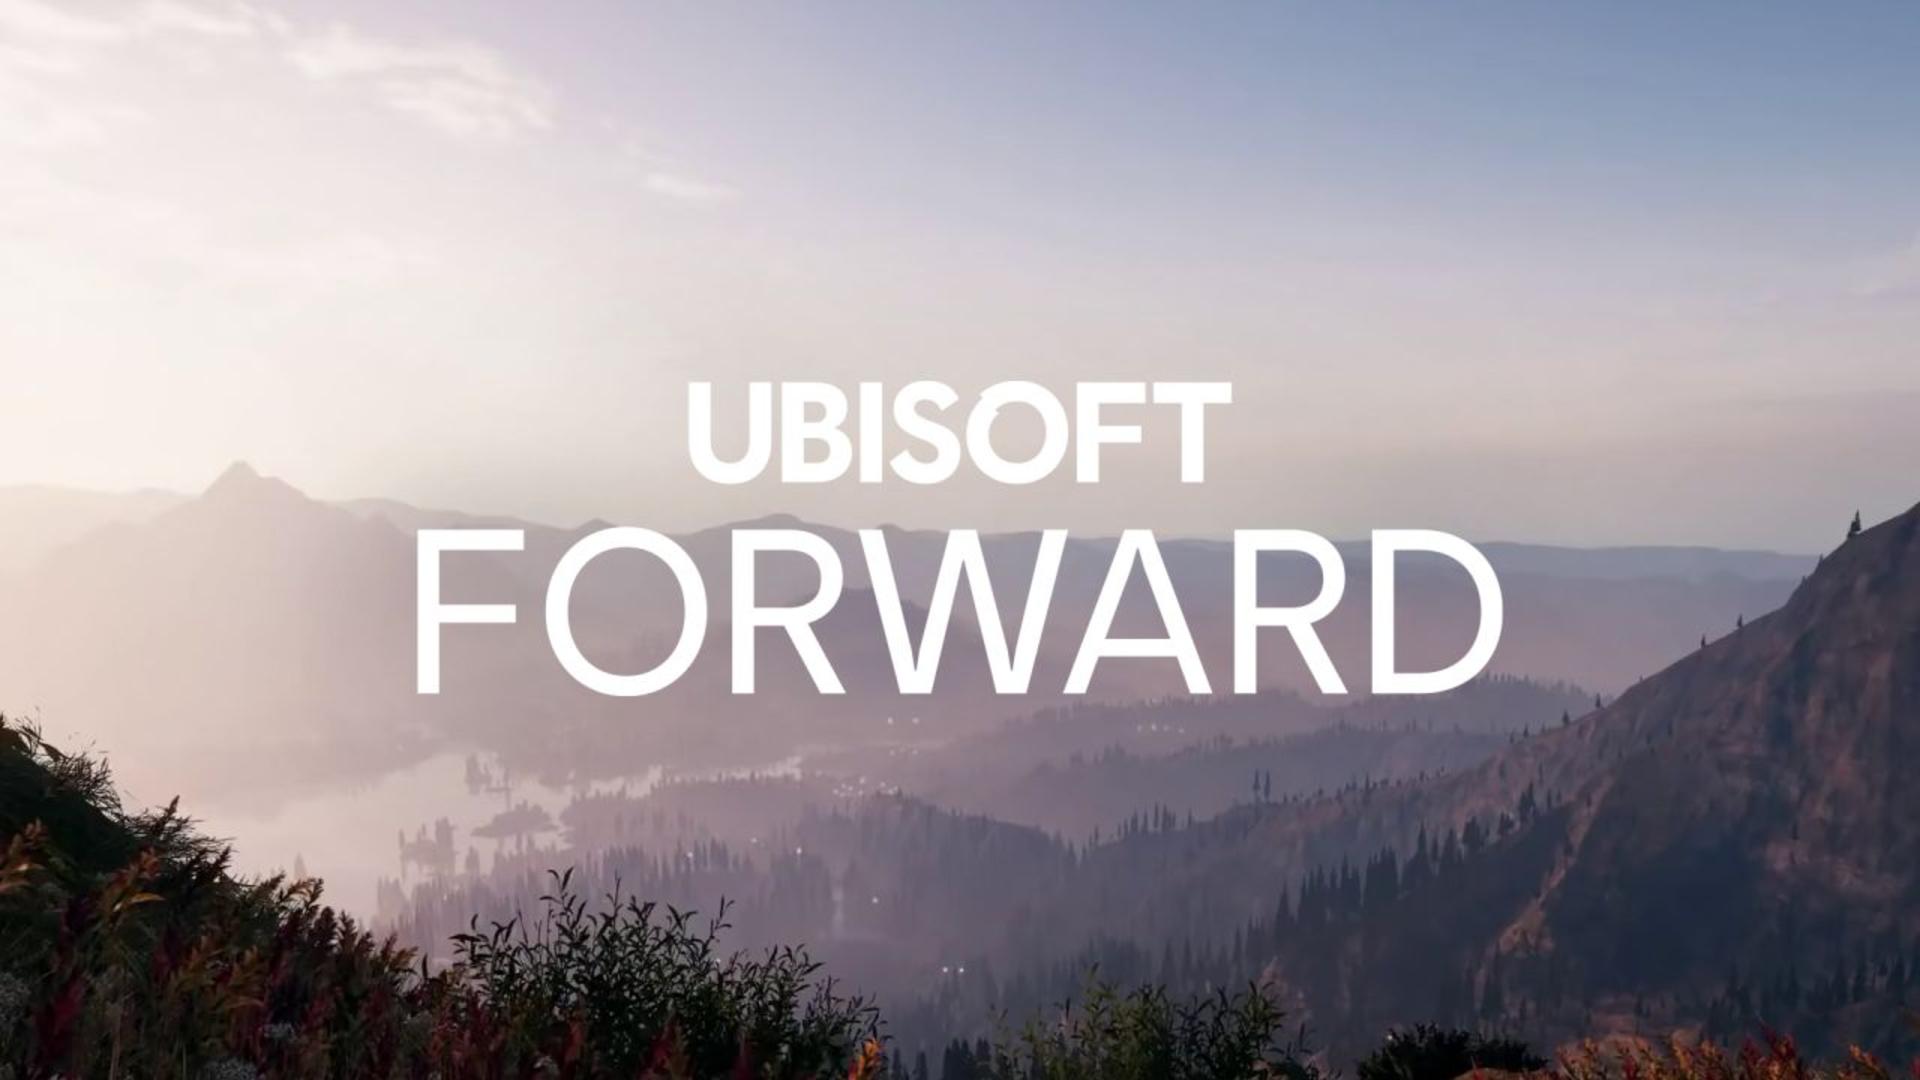 Ubisoft forward será o evento online em julho | f19f21a1 ubisoft forward | rua do medo | ubisoft forward rua do medo